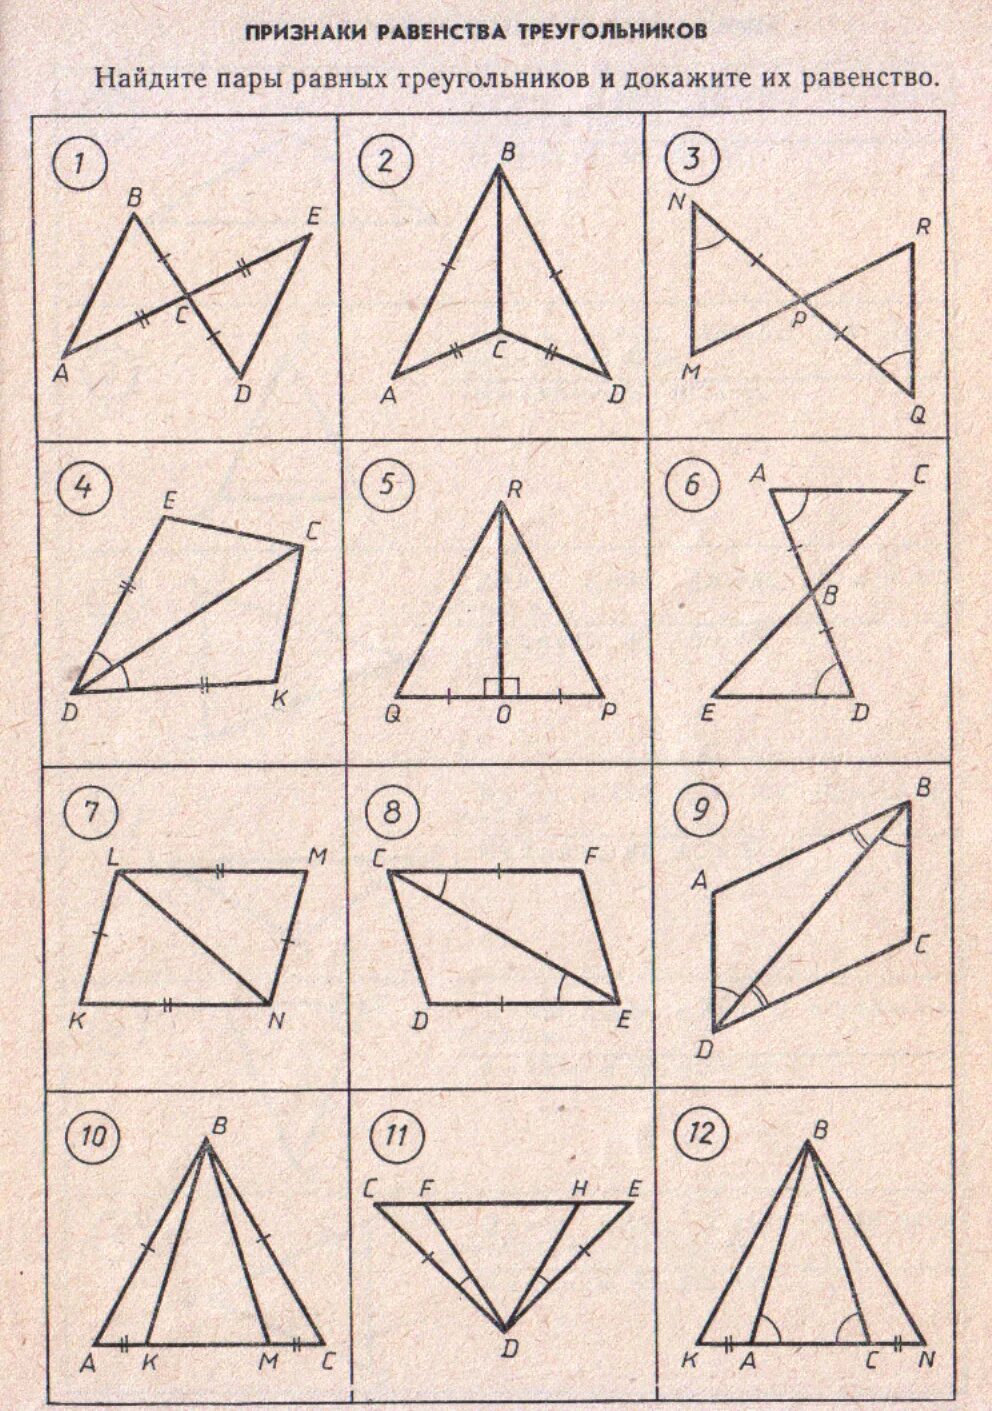 Первое равенство треугольников задачи. Признаки равенства треугольников 7 класс геометрия задачи. Задачи в чертежах на признаки равенства треугольников. Задачи на равенство треугольников по готовым чертежам. Задачи на равенство треугольников 7 класс на готовых чертежах.